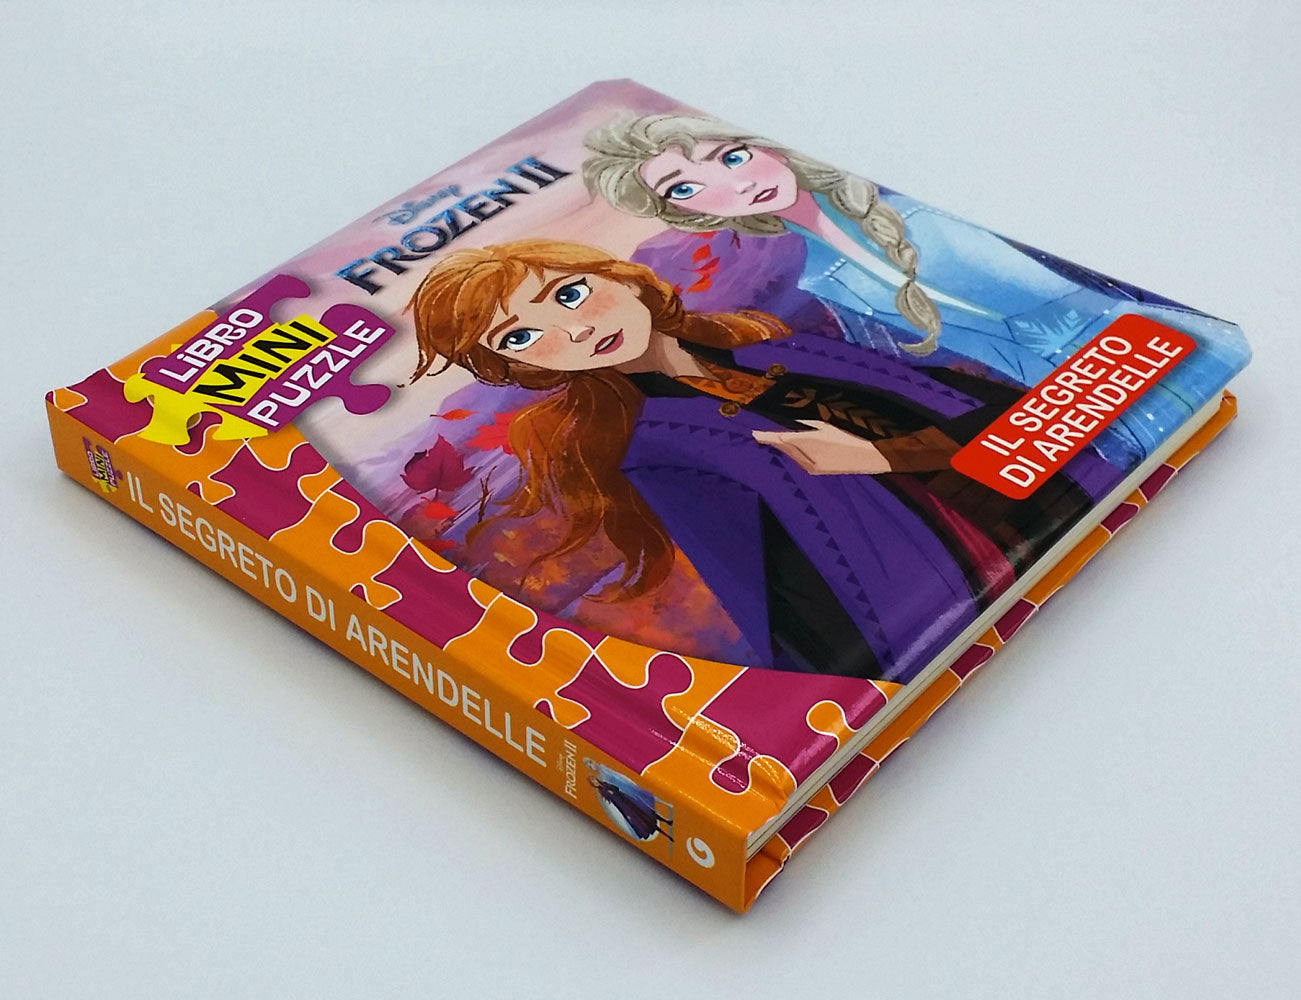 Libro Mini Puzzle - Frozen 2. Il segreto di Arendelle